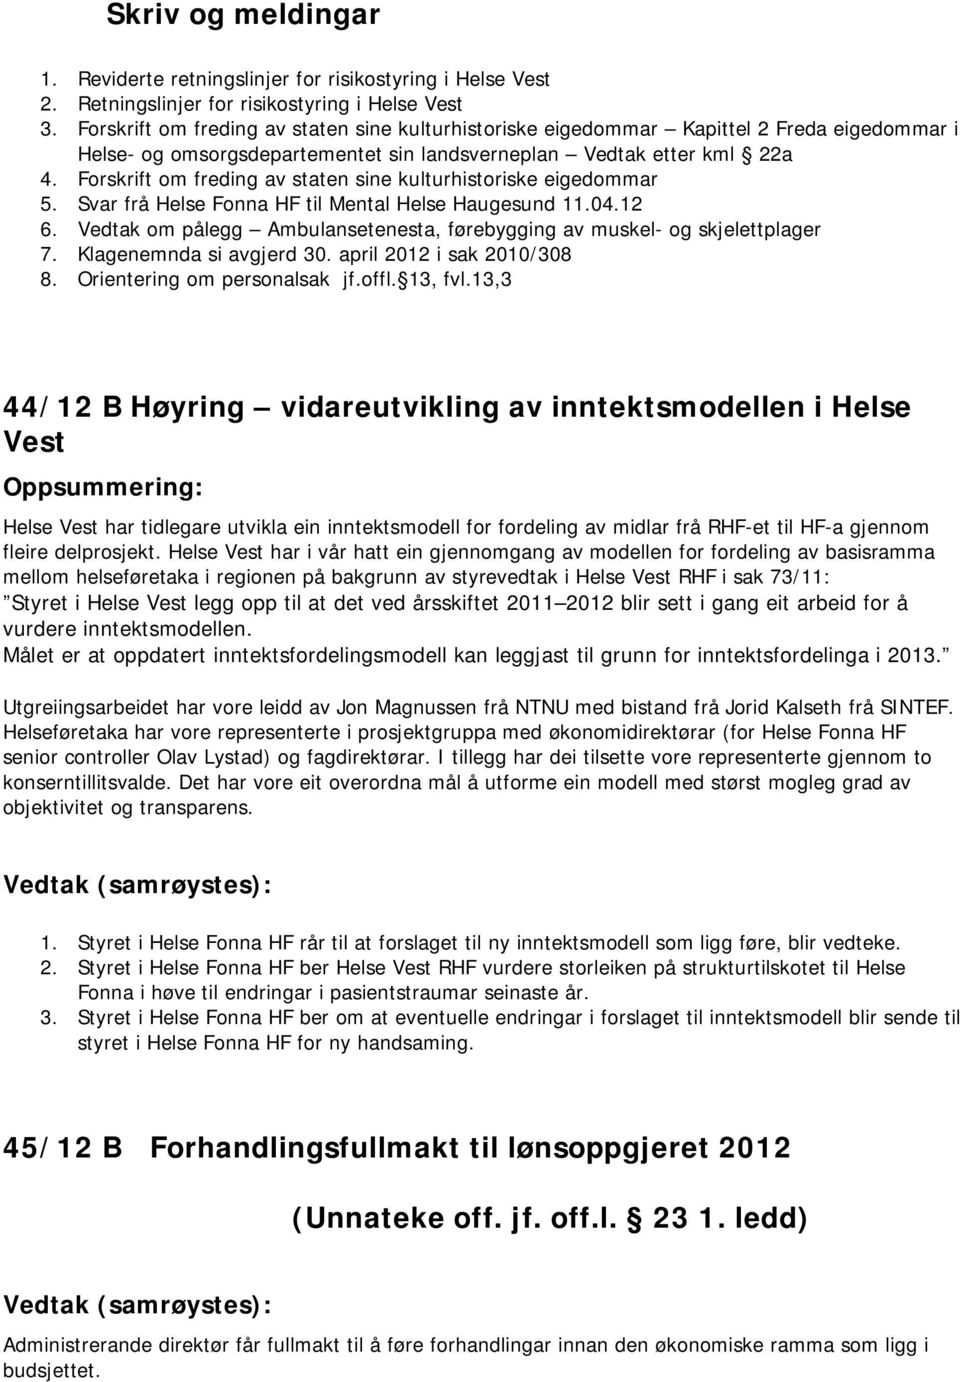 Forskrift om freding av staten sine kulturhistoriske eigedommar 5. Svar frå Helse Fonna HF til Mental Helse Haugesund 11.04.12 6.